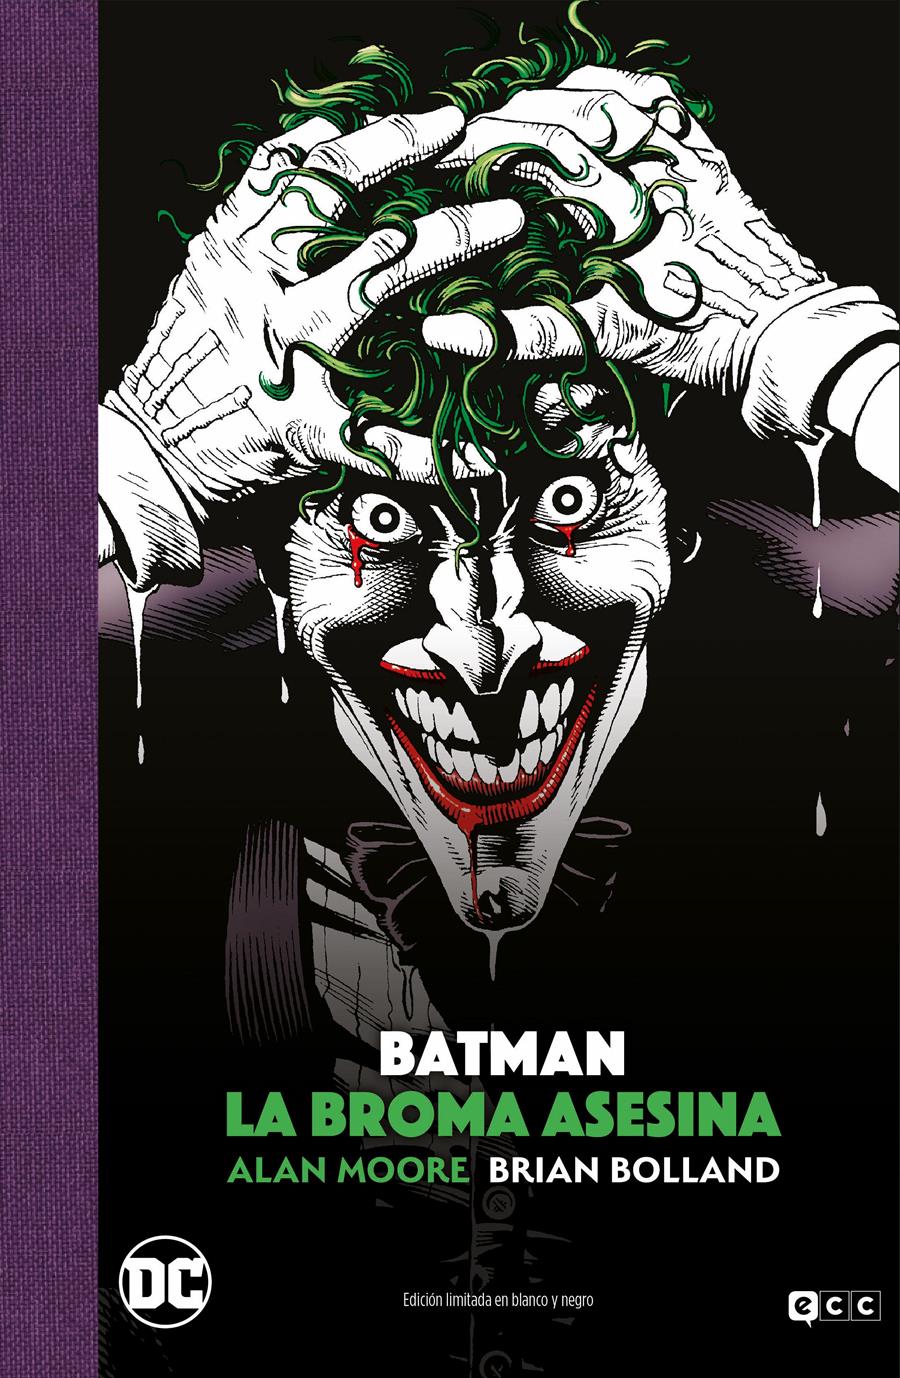 Batman: La broma asesina - Edición Deluxe limitada en blanco y negro | N0921-ECC33 | Alan Moore / Brian Bolland / Mark Waid | Terra de Còmic - Tu tienda de cómics online especializada en cómics, manga y merchandising